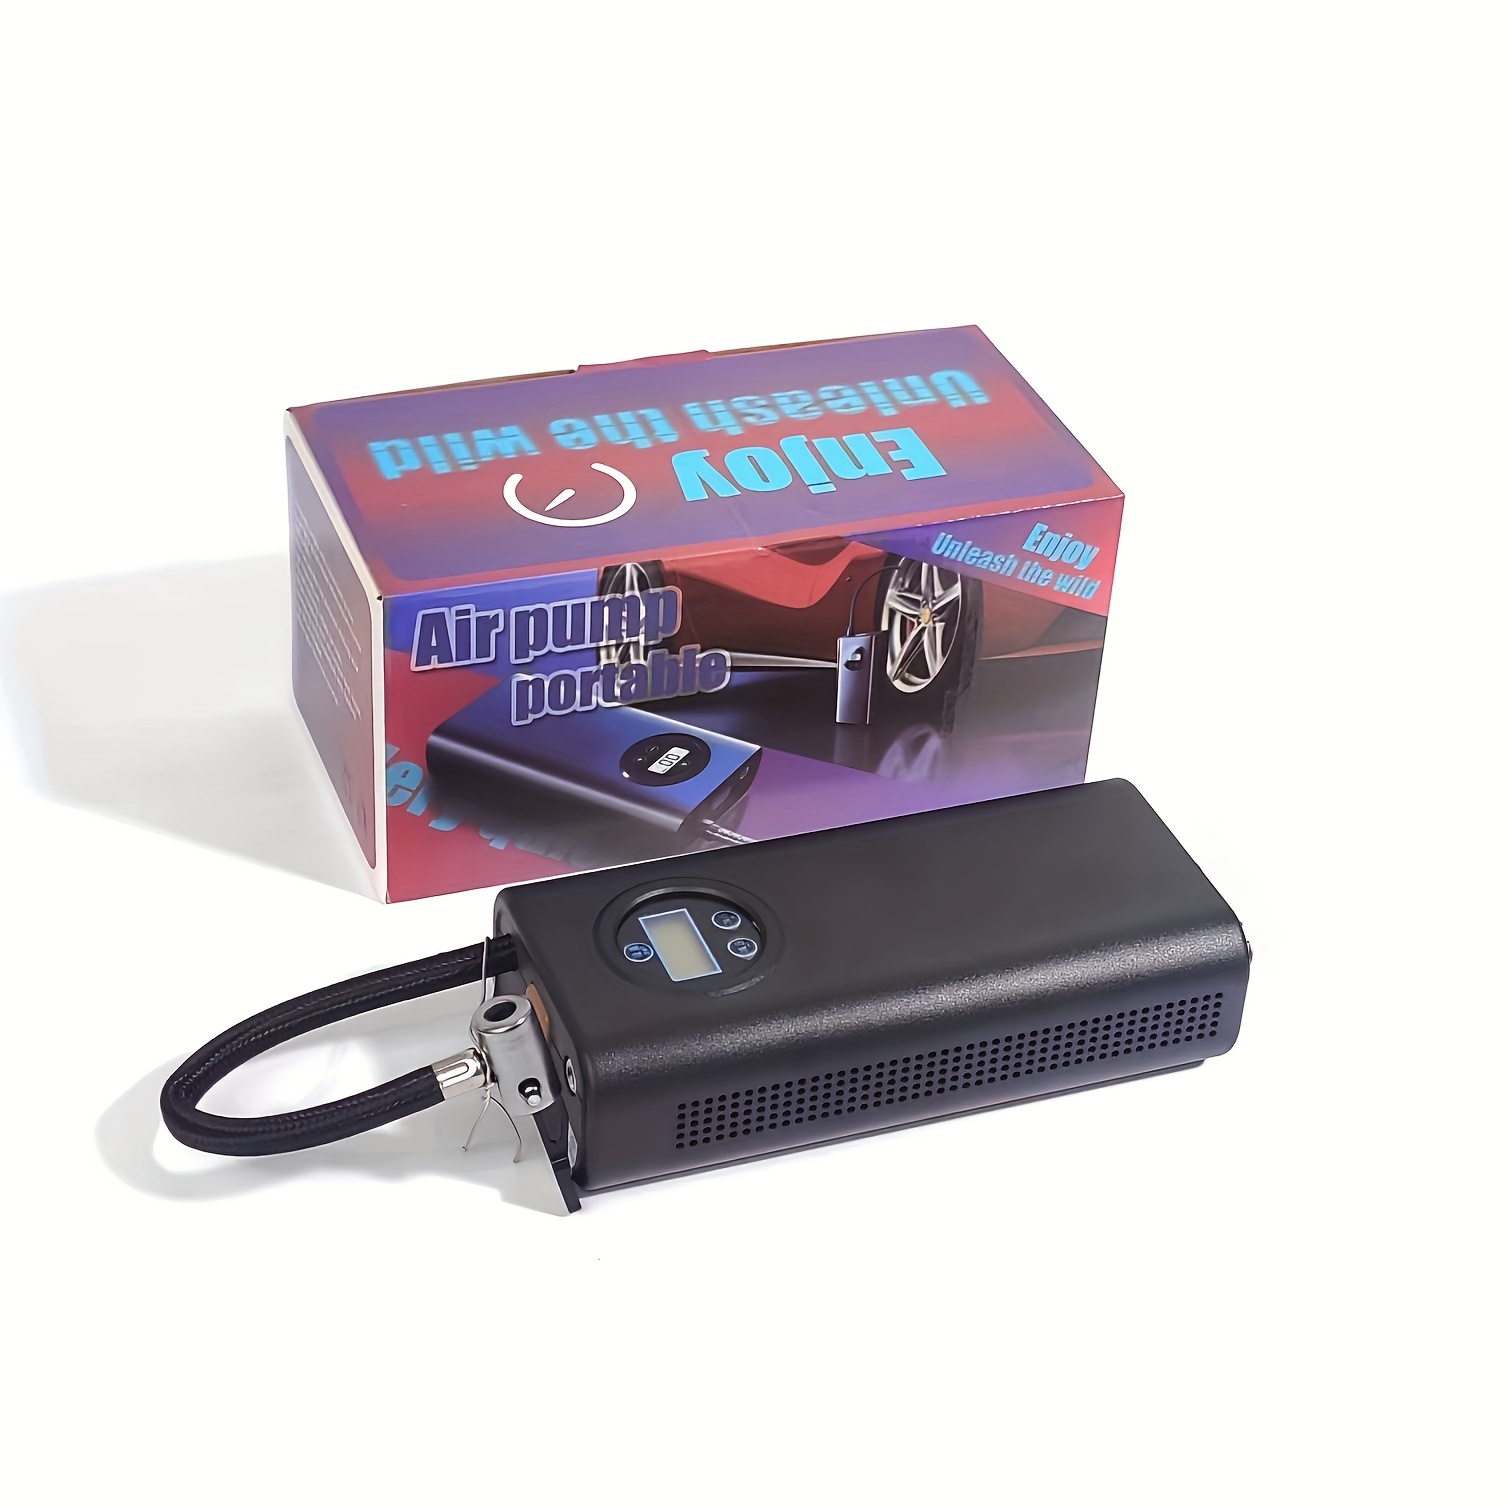 Portable USB air compressor TEA306